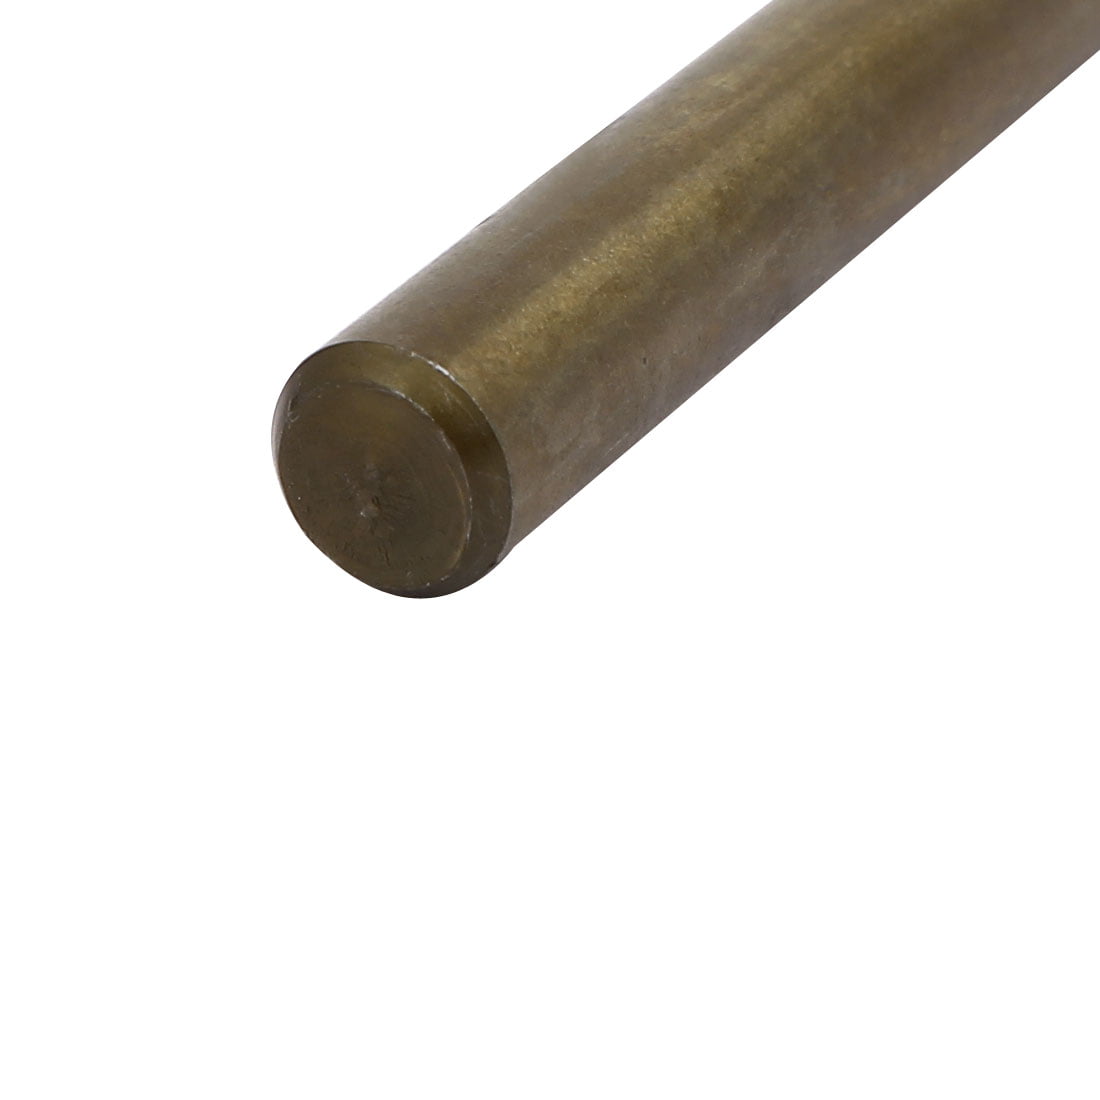 6.7mm Drilling Dia Straight Shank HSS Cobalt Metric Twist Drill Bit Rotary Tool